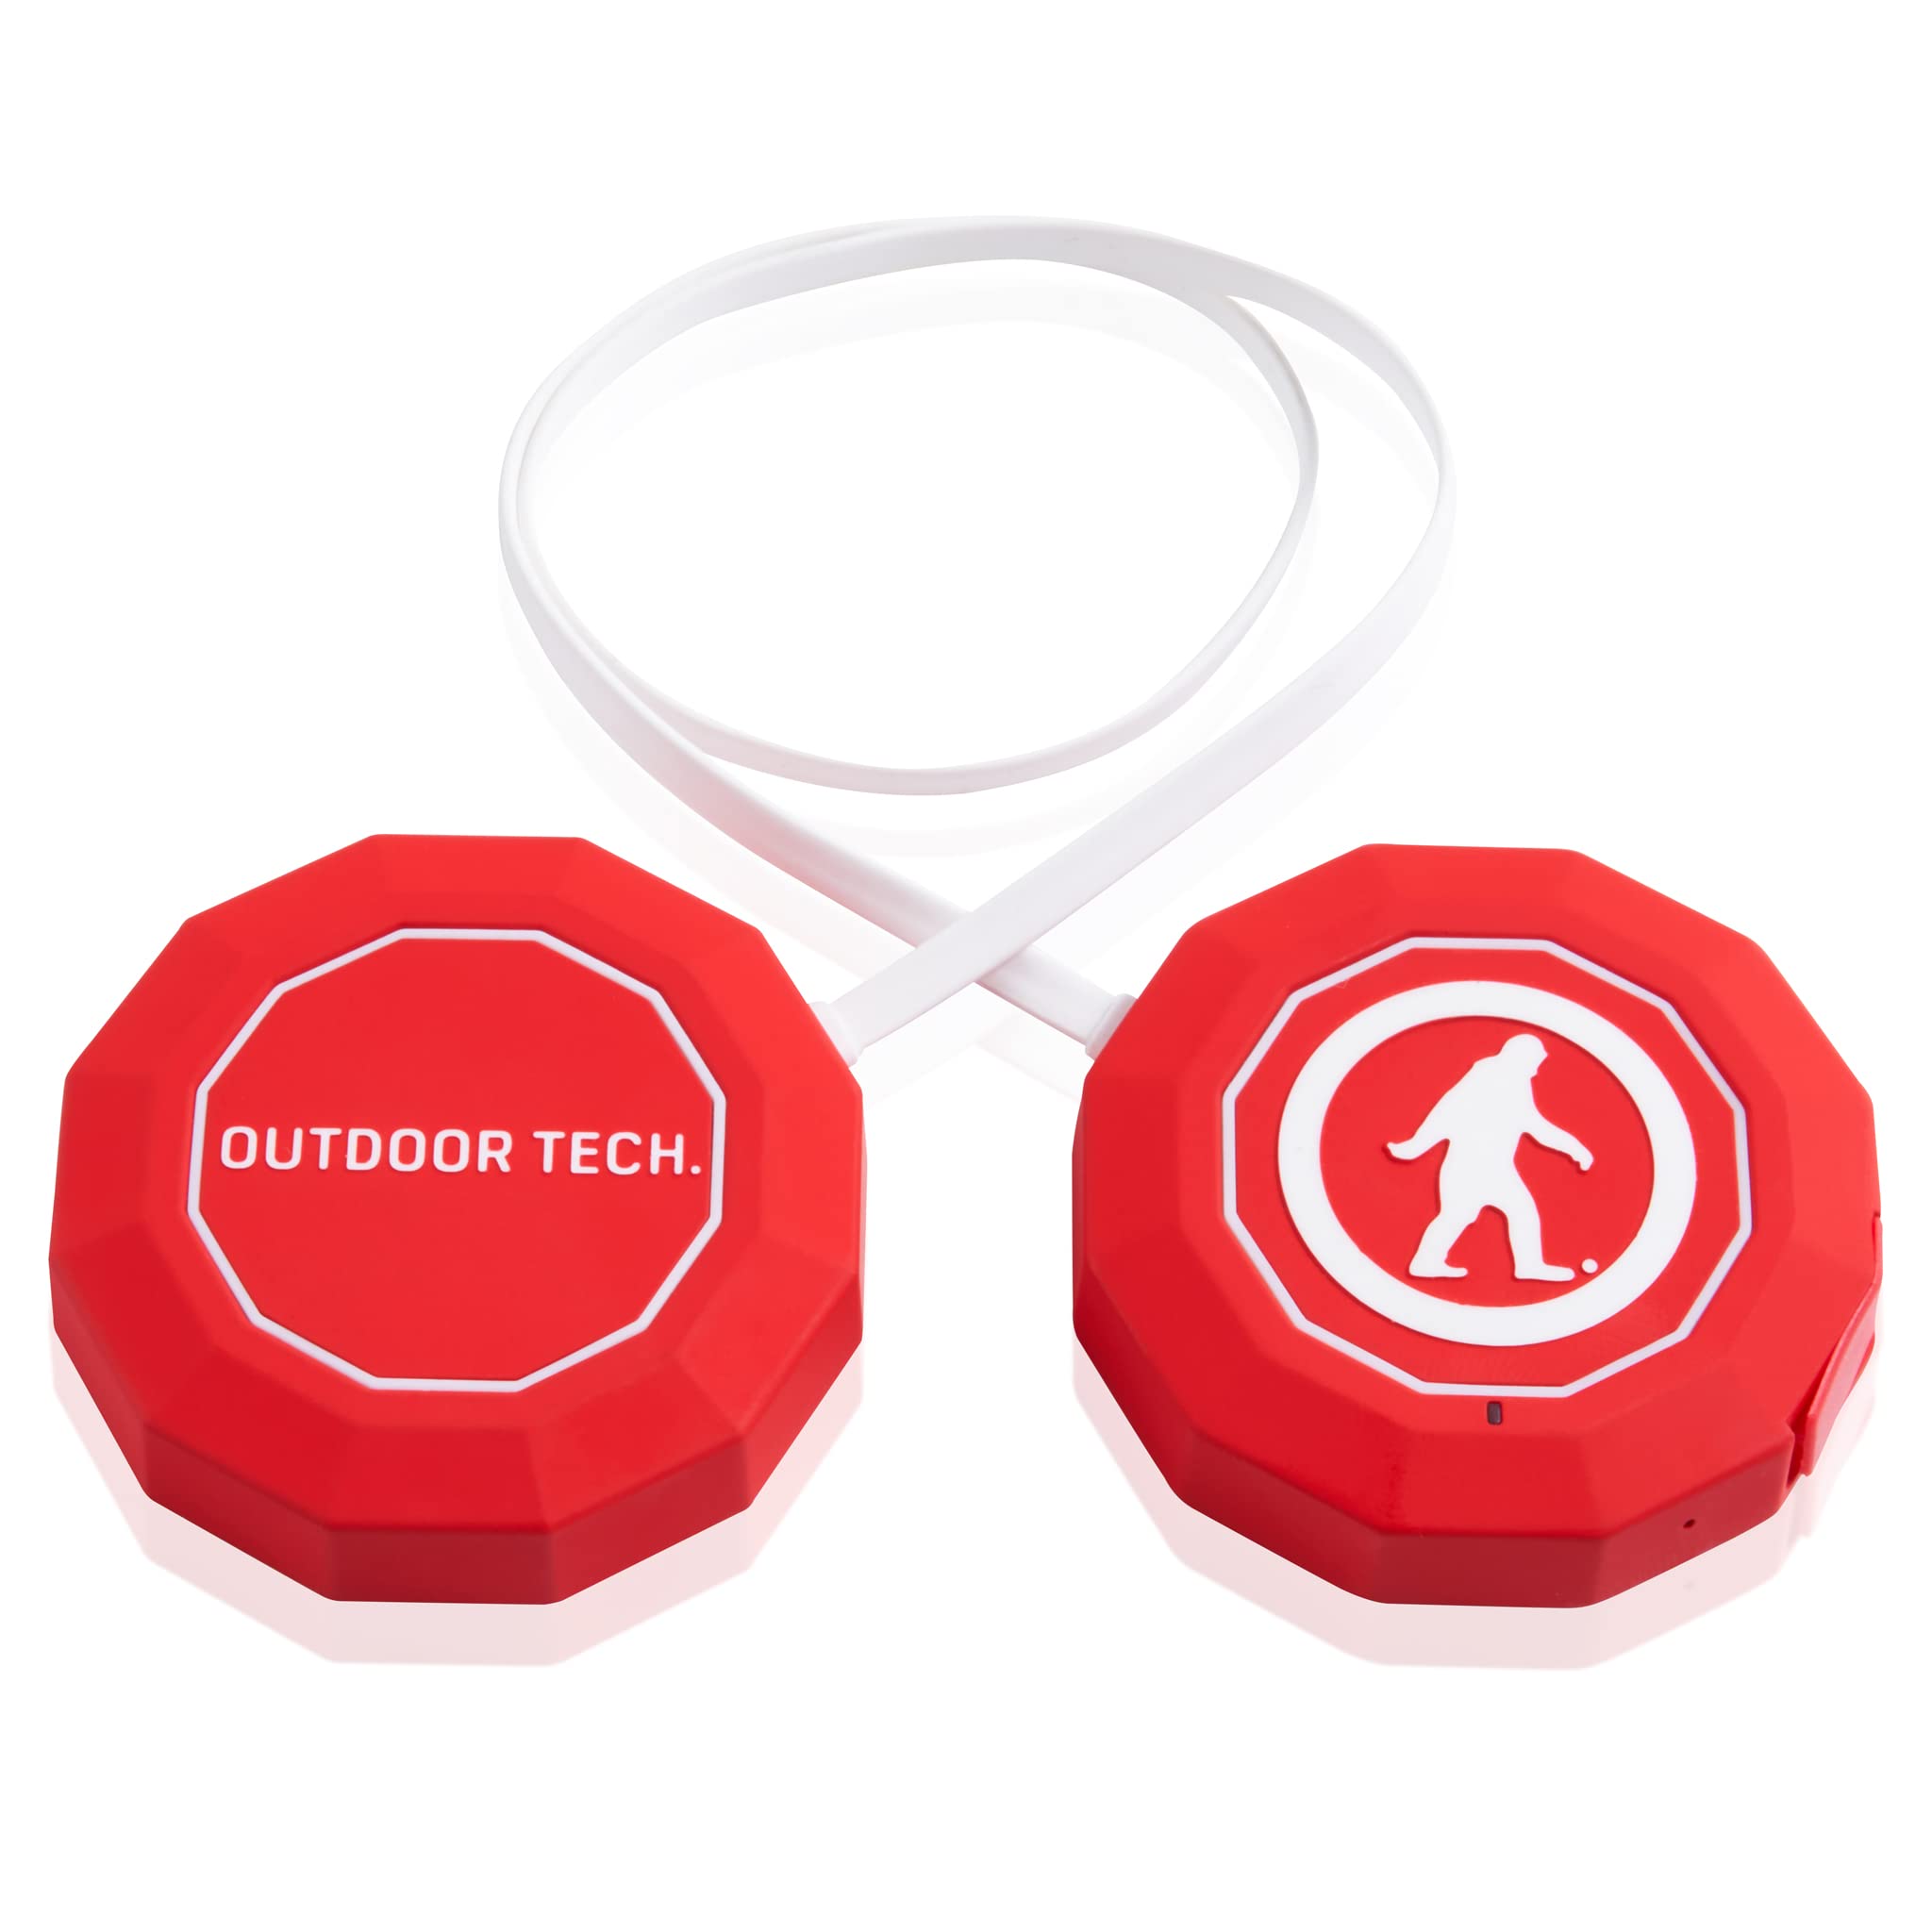  Outdoor Tech Динамики Chips 3.0 Snow Helmet с Bluetooth для беспроводного подключения аудио и музыки к шлемам для сноуборда и лы...